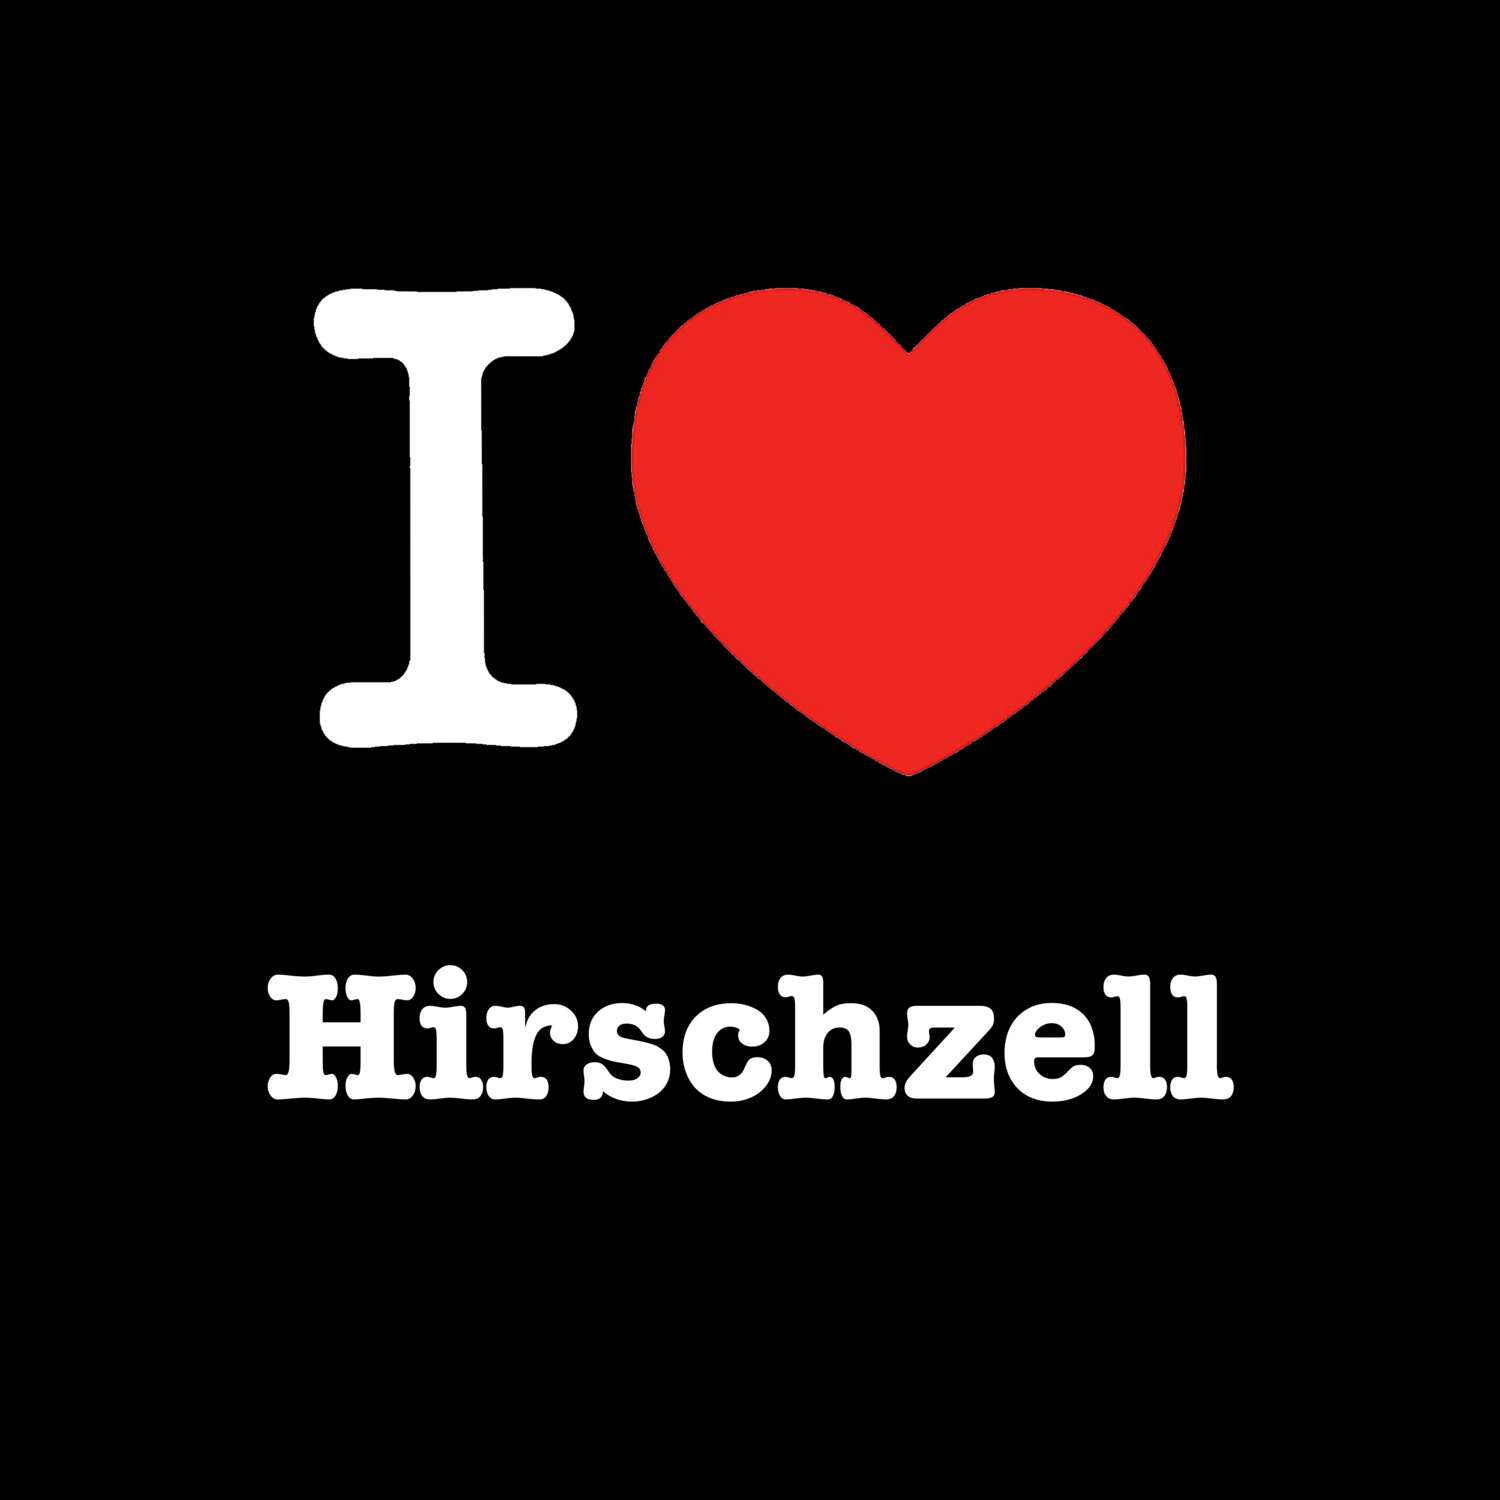 Hirschzell T-Shirt »I love«